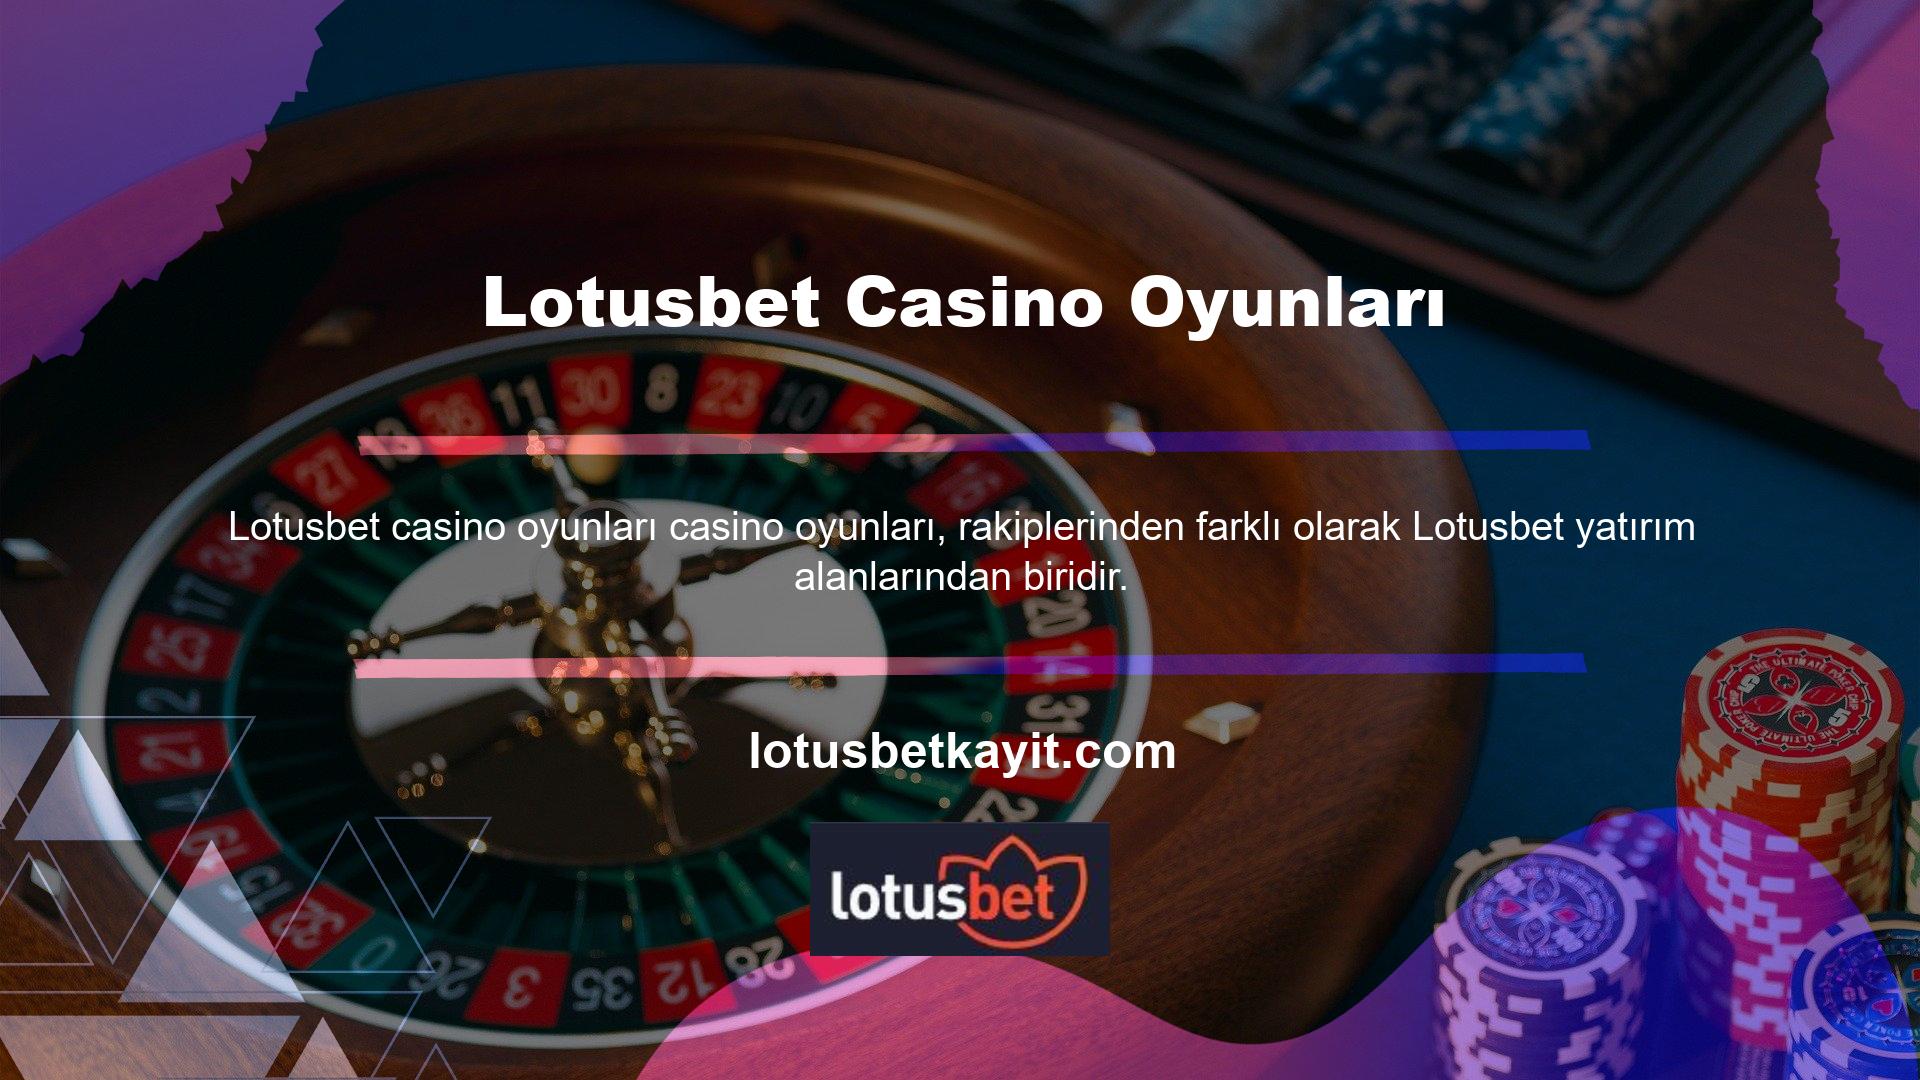 Lotusbet bahis oynayan tüm casino tutkunları, hem canlı hem de düzenli olarak geniş bir casino ve slot makinesi oyunları yelpazesine sahiptir